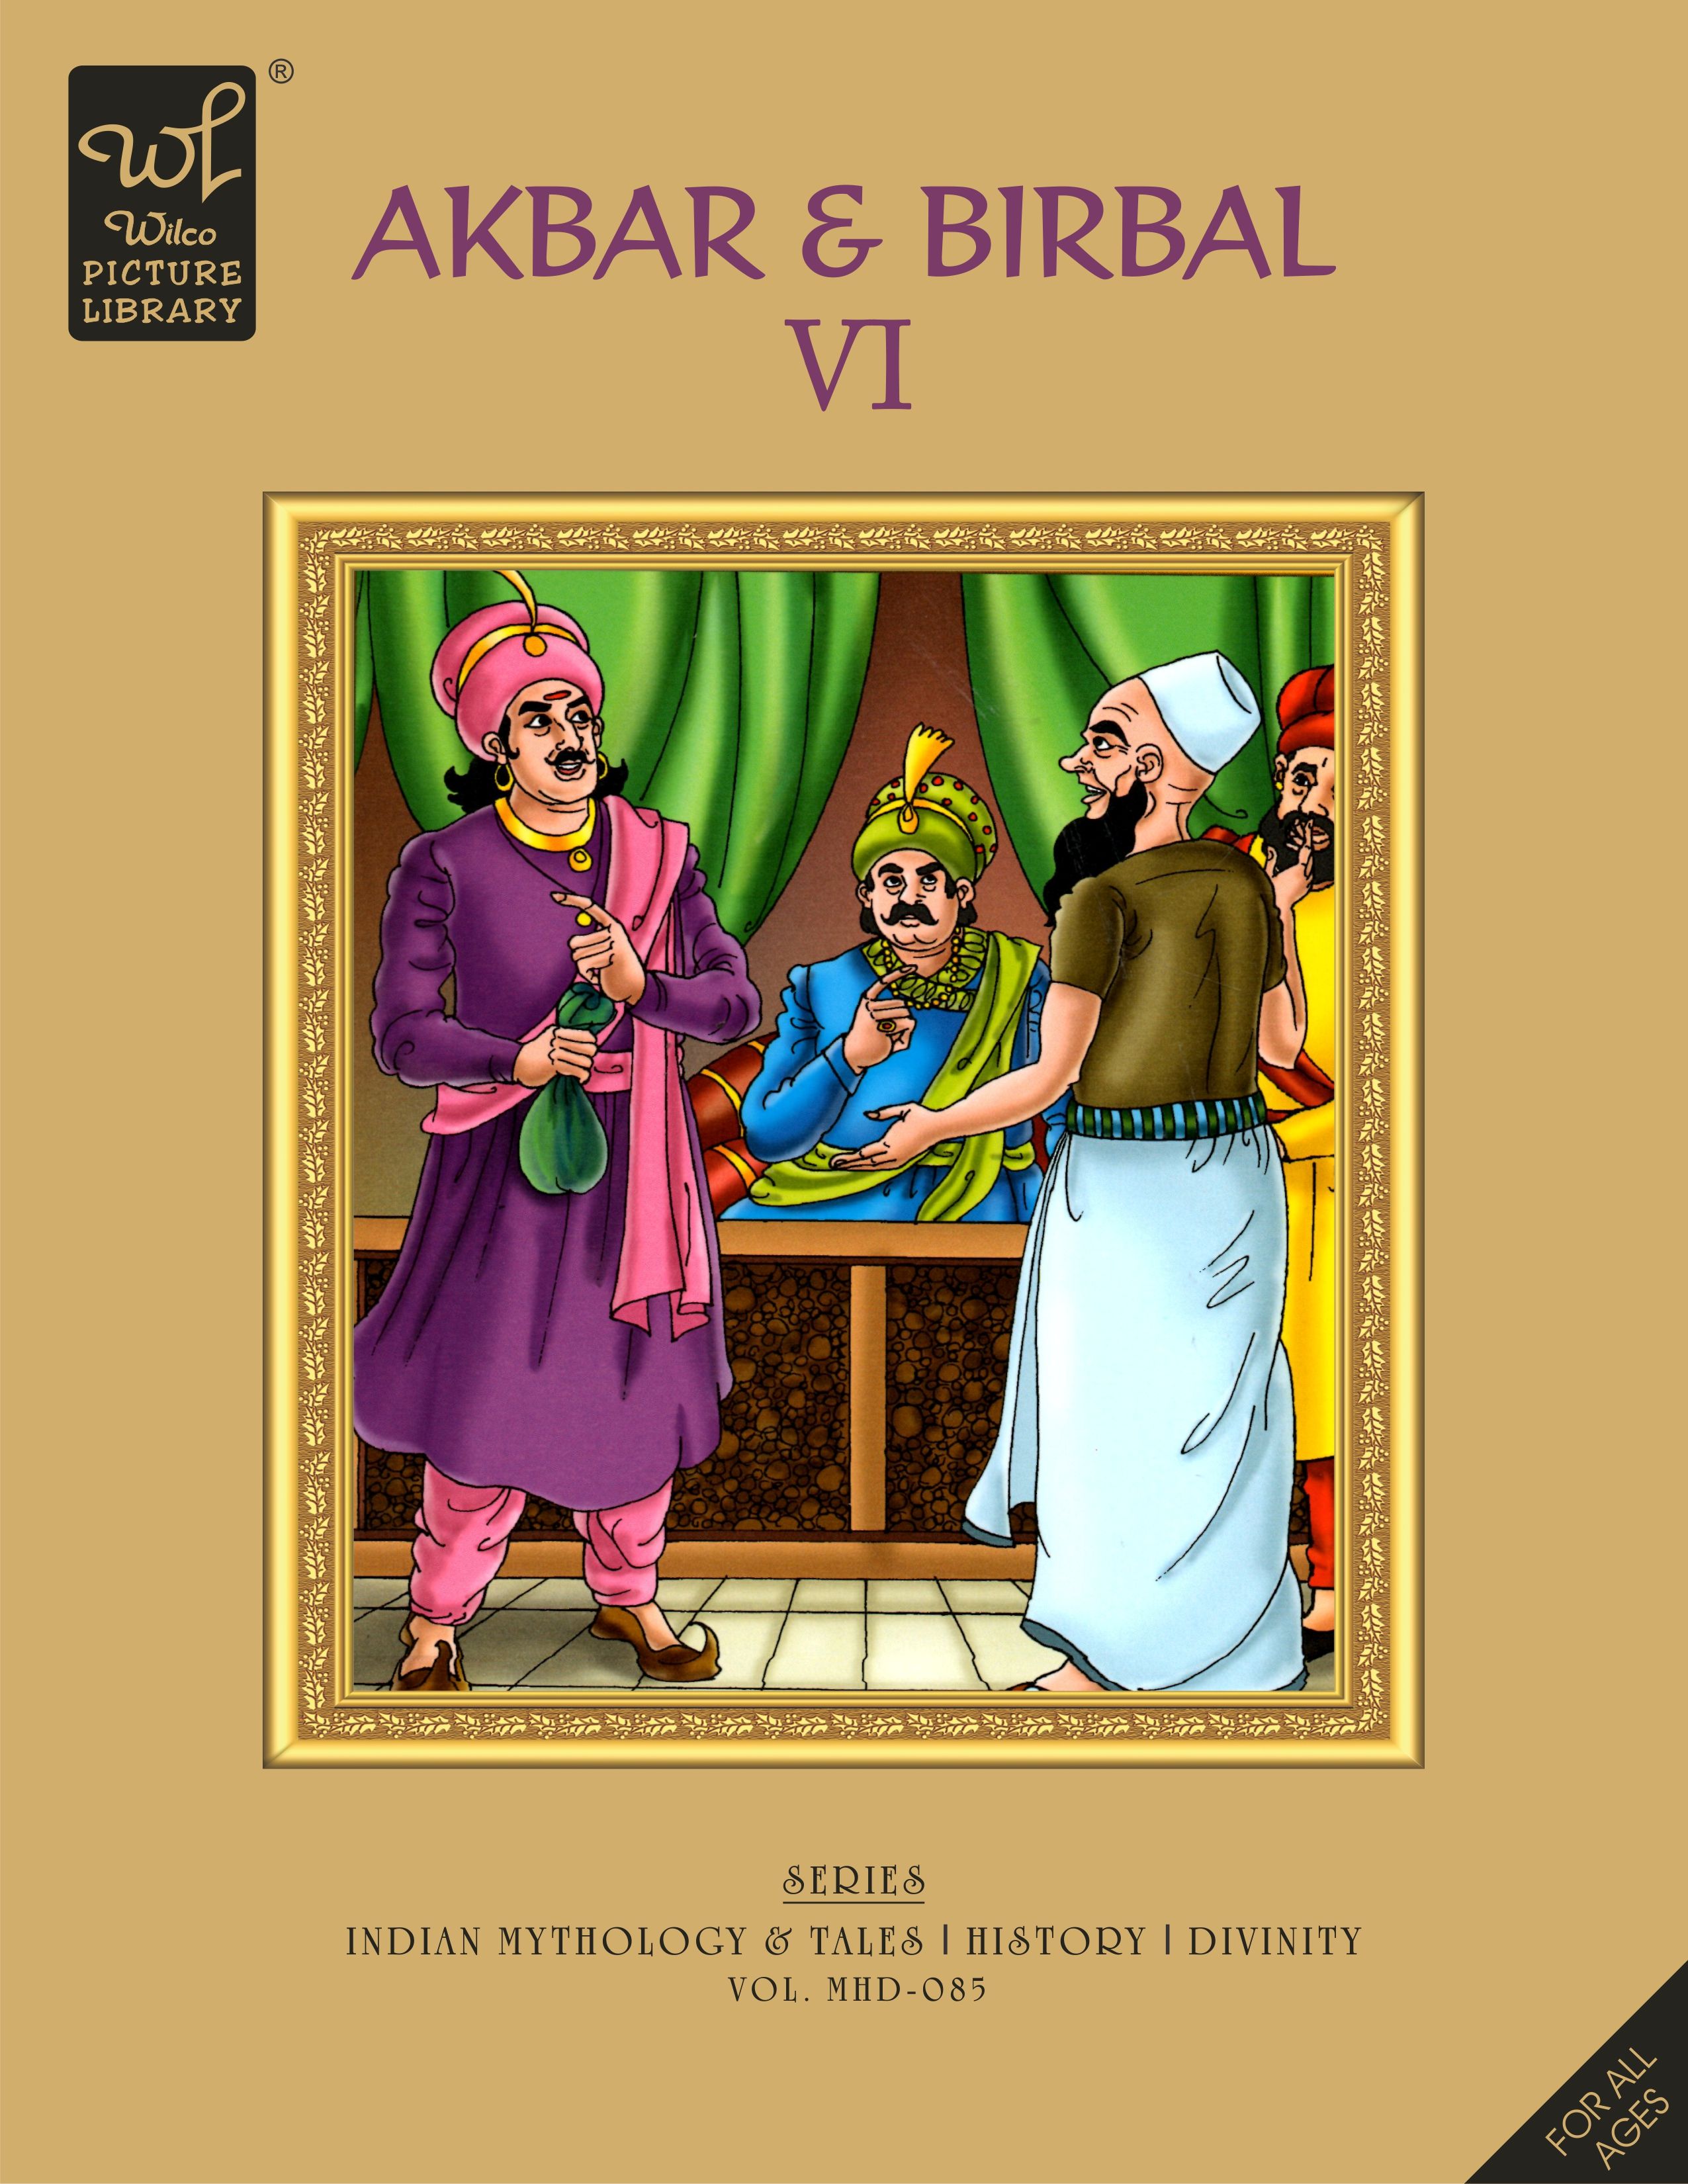 WPL:Akbar & Birbal - VI